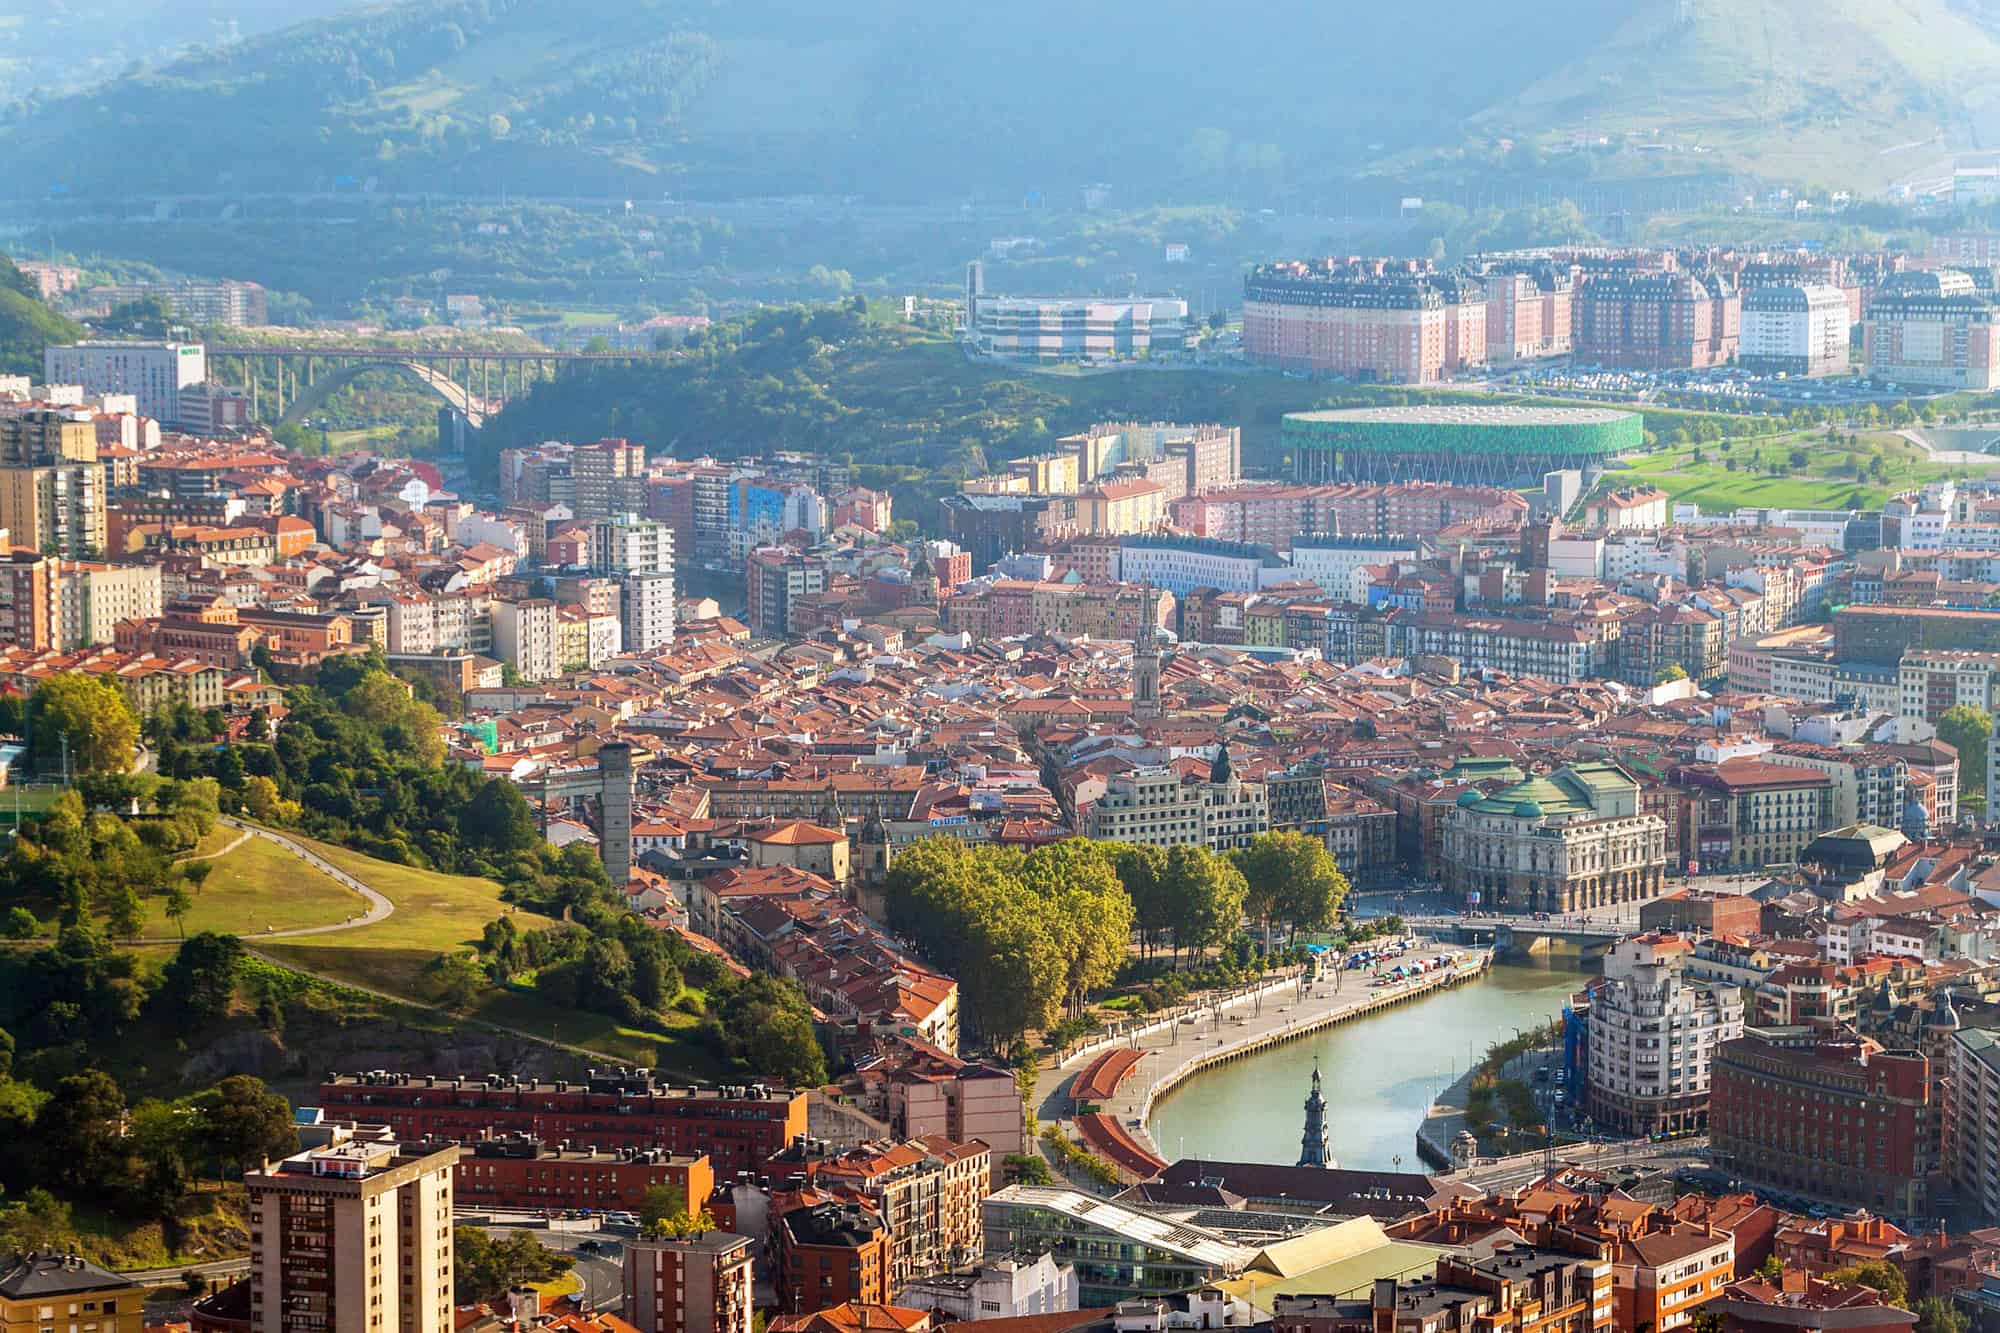 Aerial view of Bilbao, Spain